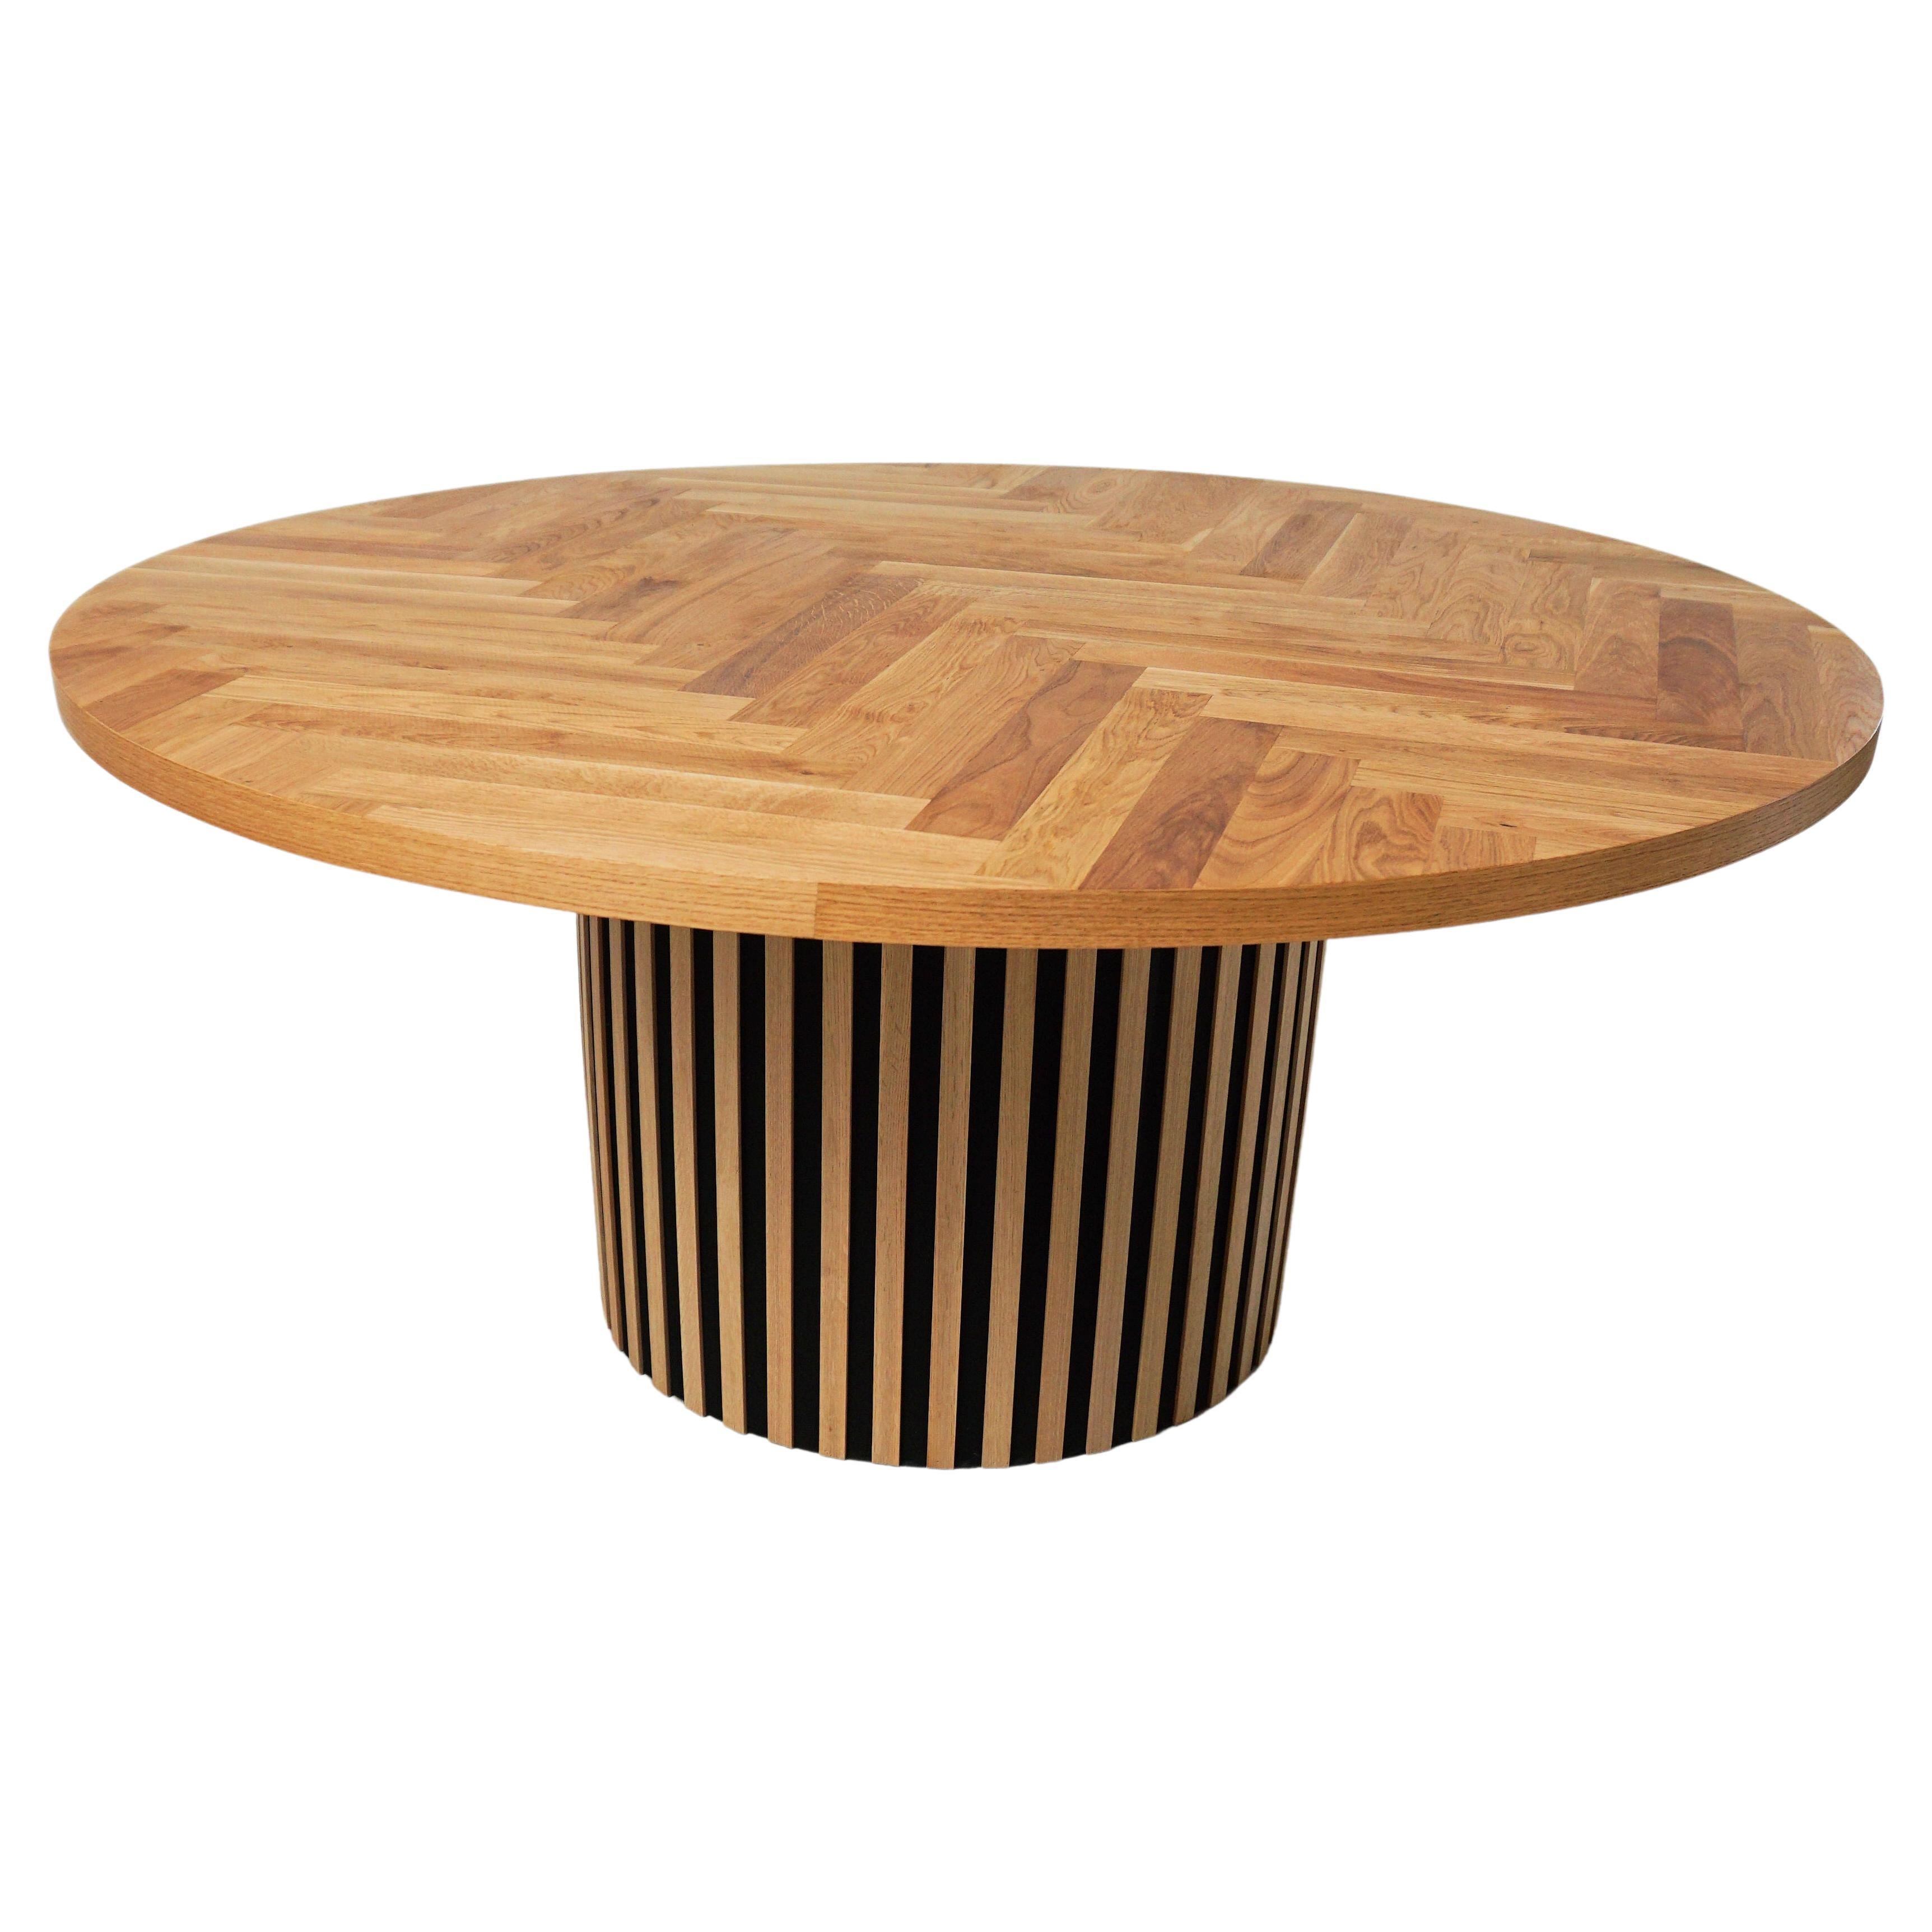 Table de salle à manger circulaire danoise moderniste personnalisée en chêne, fabriquée à la main